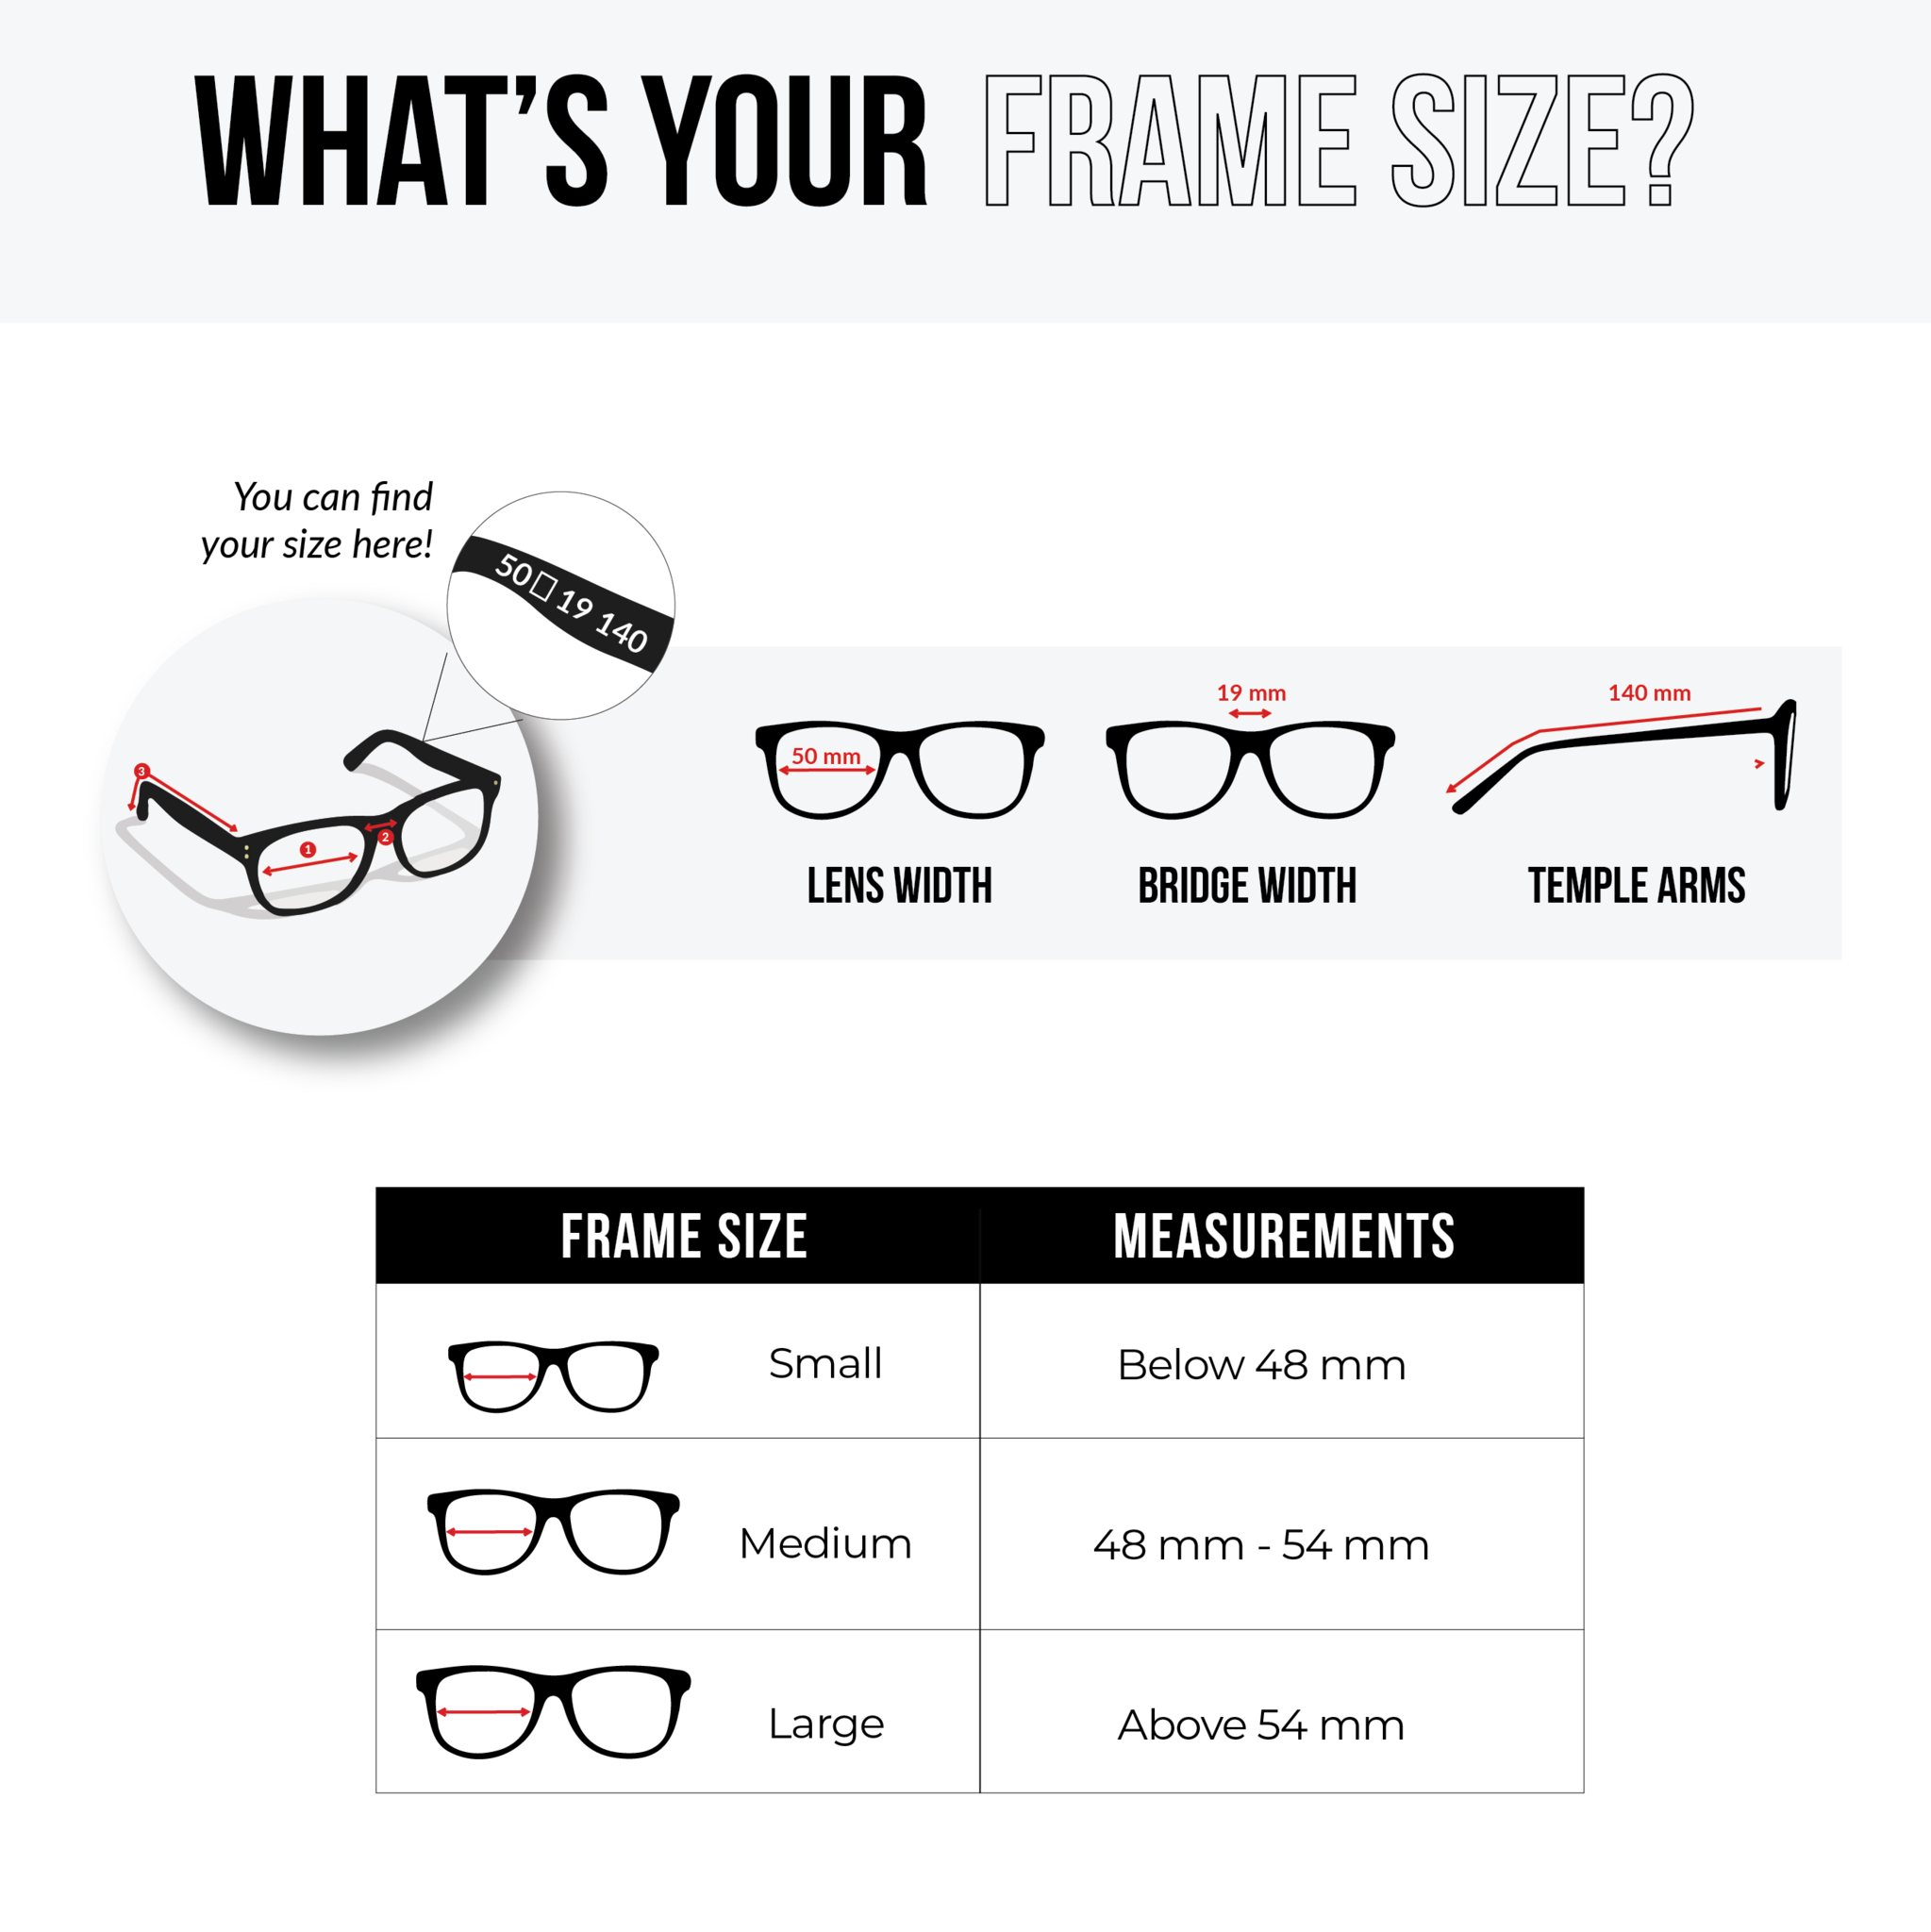 NS Luxury - J01 - Black - Eyeglasses